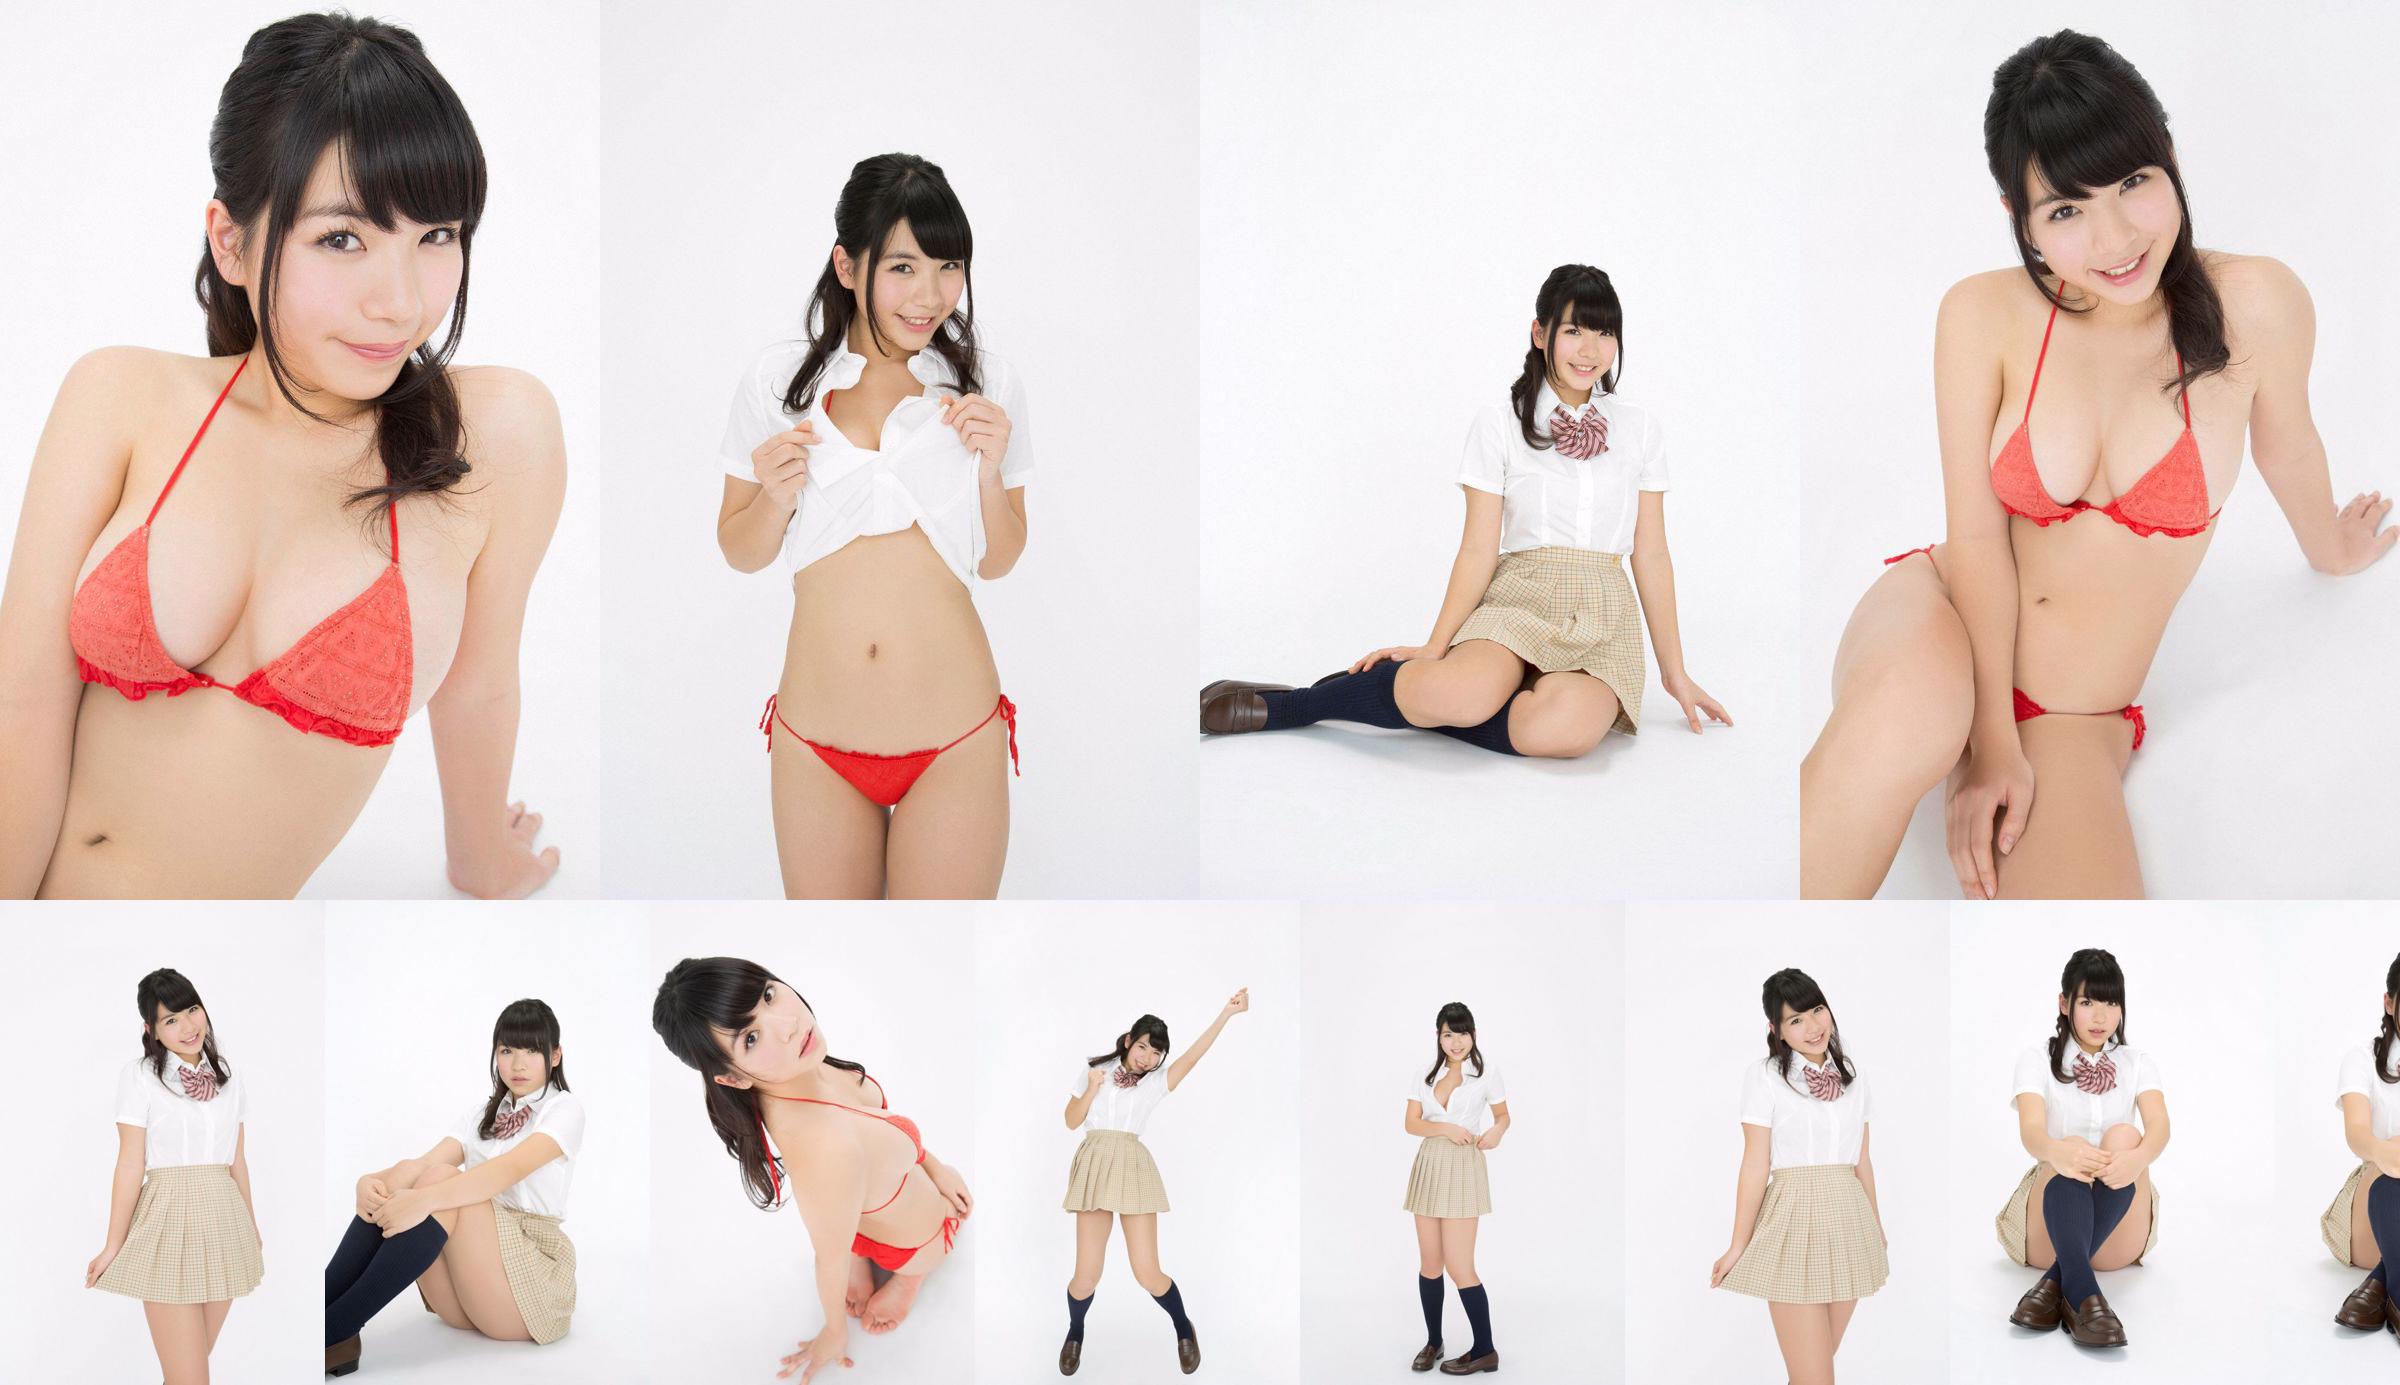 Jun Serizawa / Jun Serizawa "Một nữ sinh trung học năng động, lùn nhất Nhật Bản グ ラ ド ル nhập học! No.45b9bc Trang 1